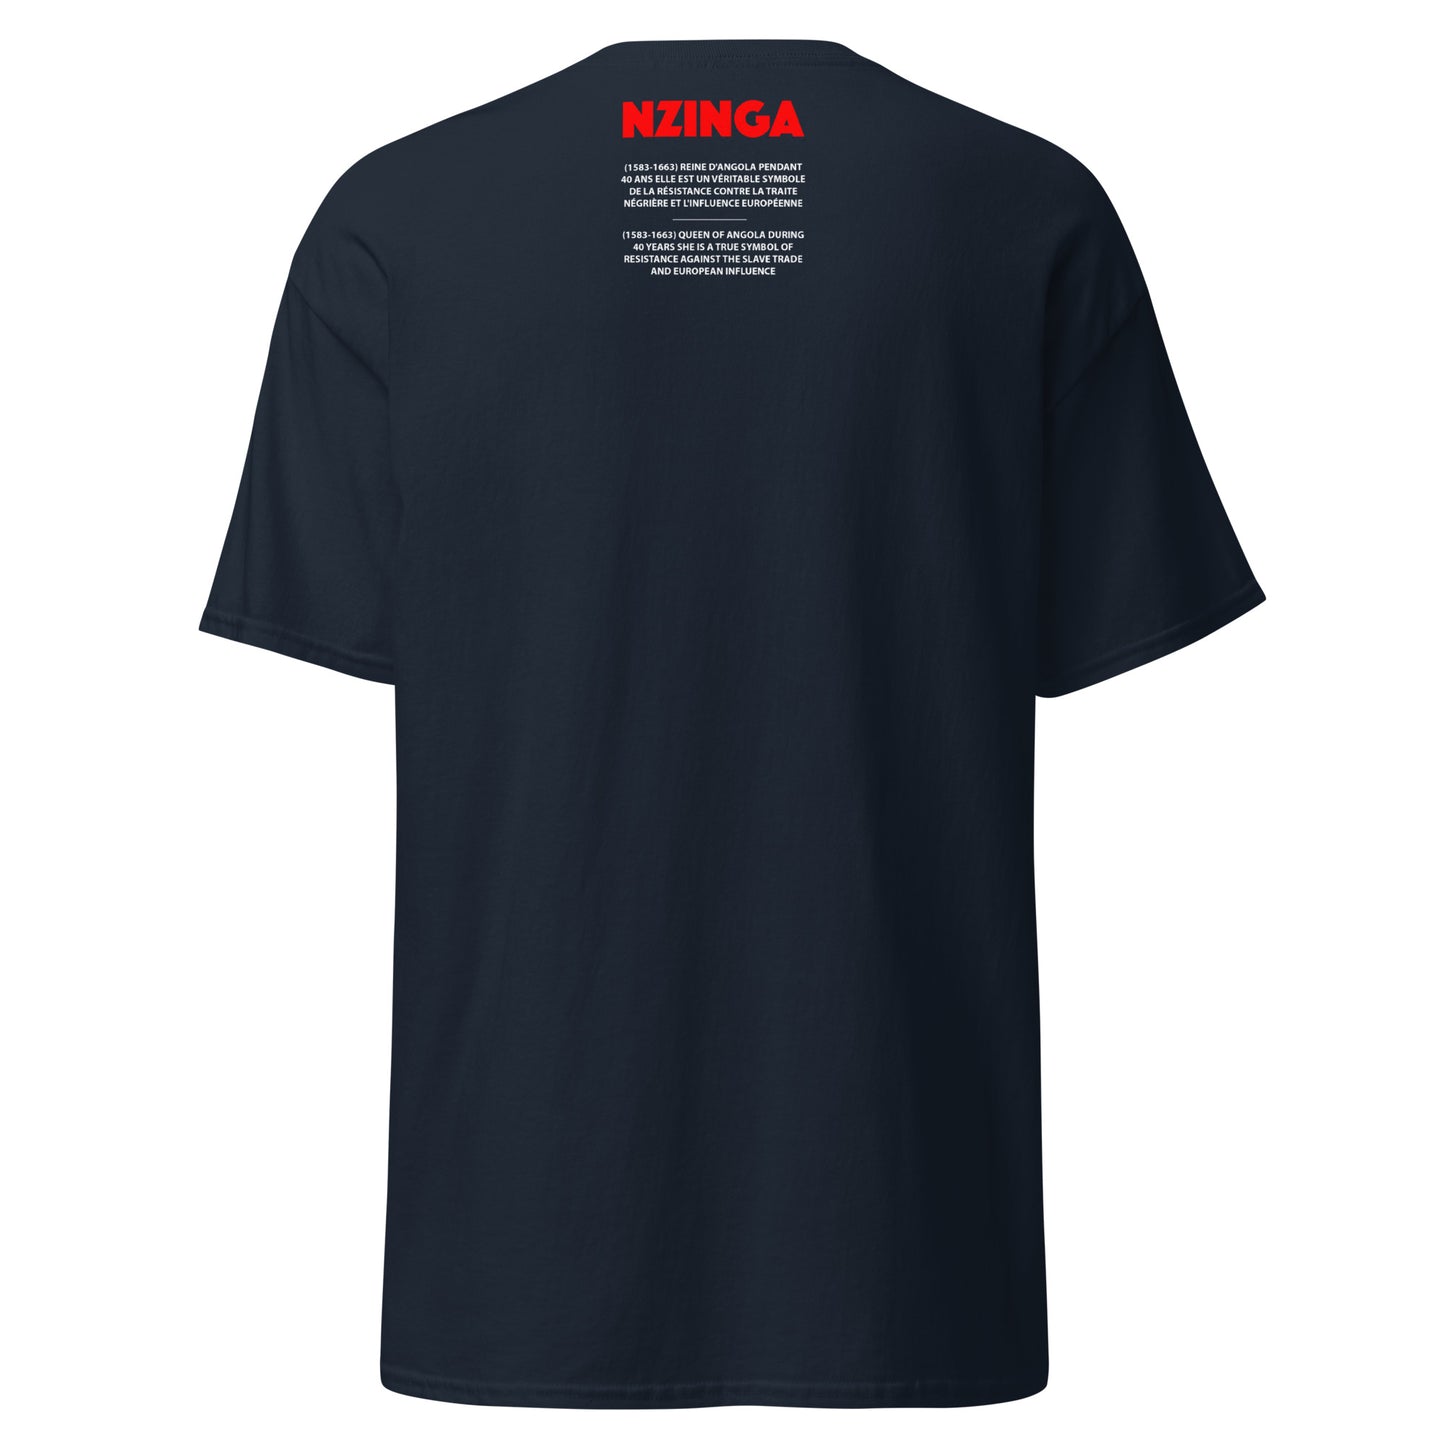 NZINGA (T-Shirt Miroir)